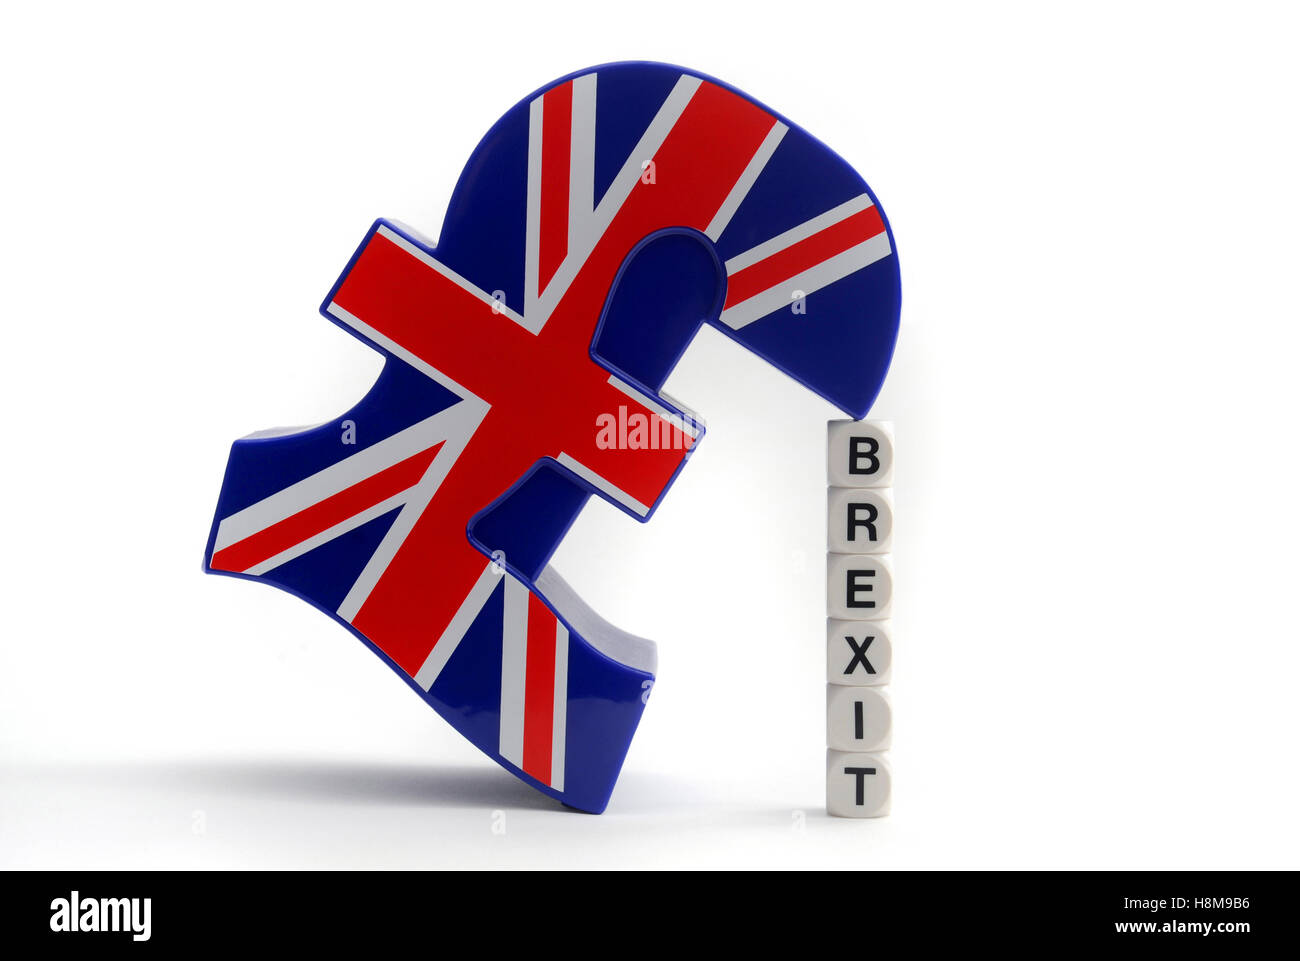 BRITISH POUND SIGN AVEC WORD dés l'orthographe 'BREXIT' RE BREXIT LAISSANT L'UE L'UNION EUROPÉENNE VOTE RÉFÉRENDAIRE QUITTER GO UK Banque D'Images